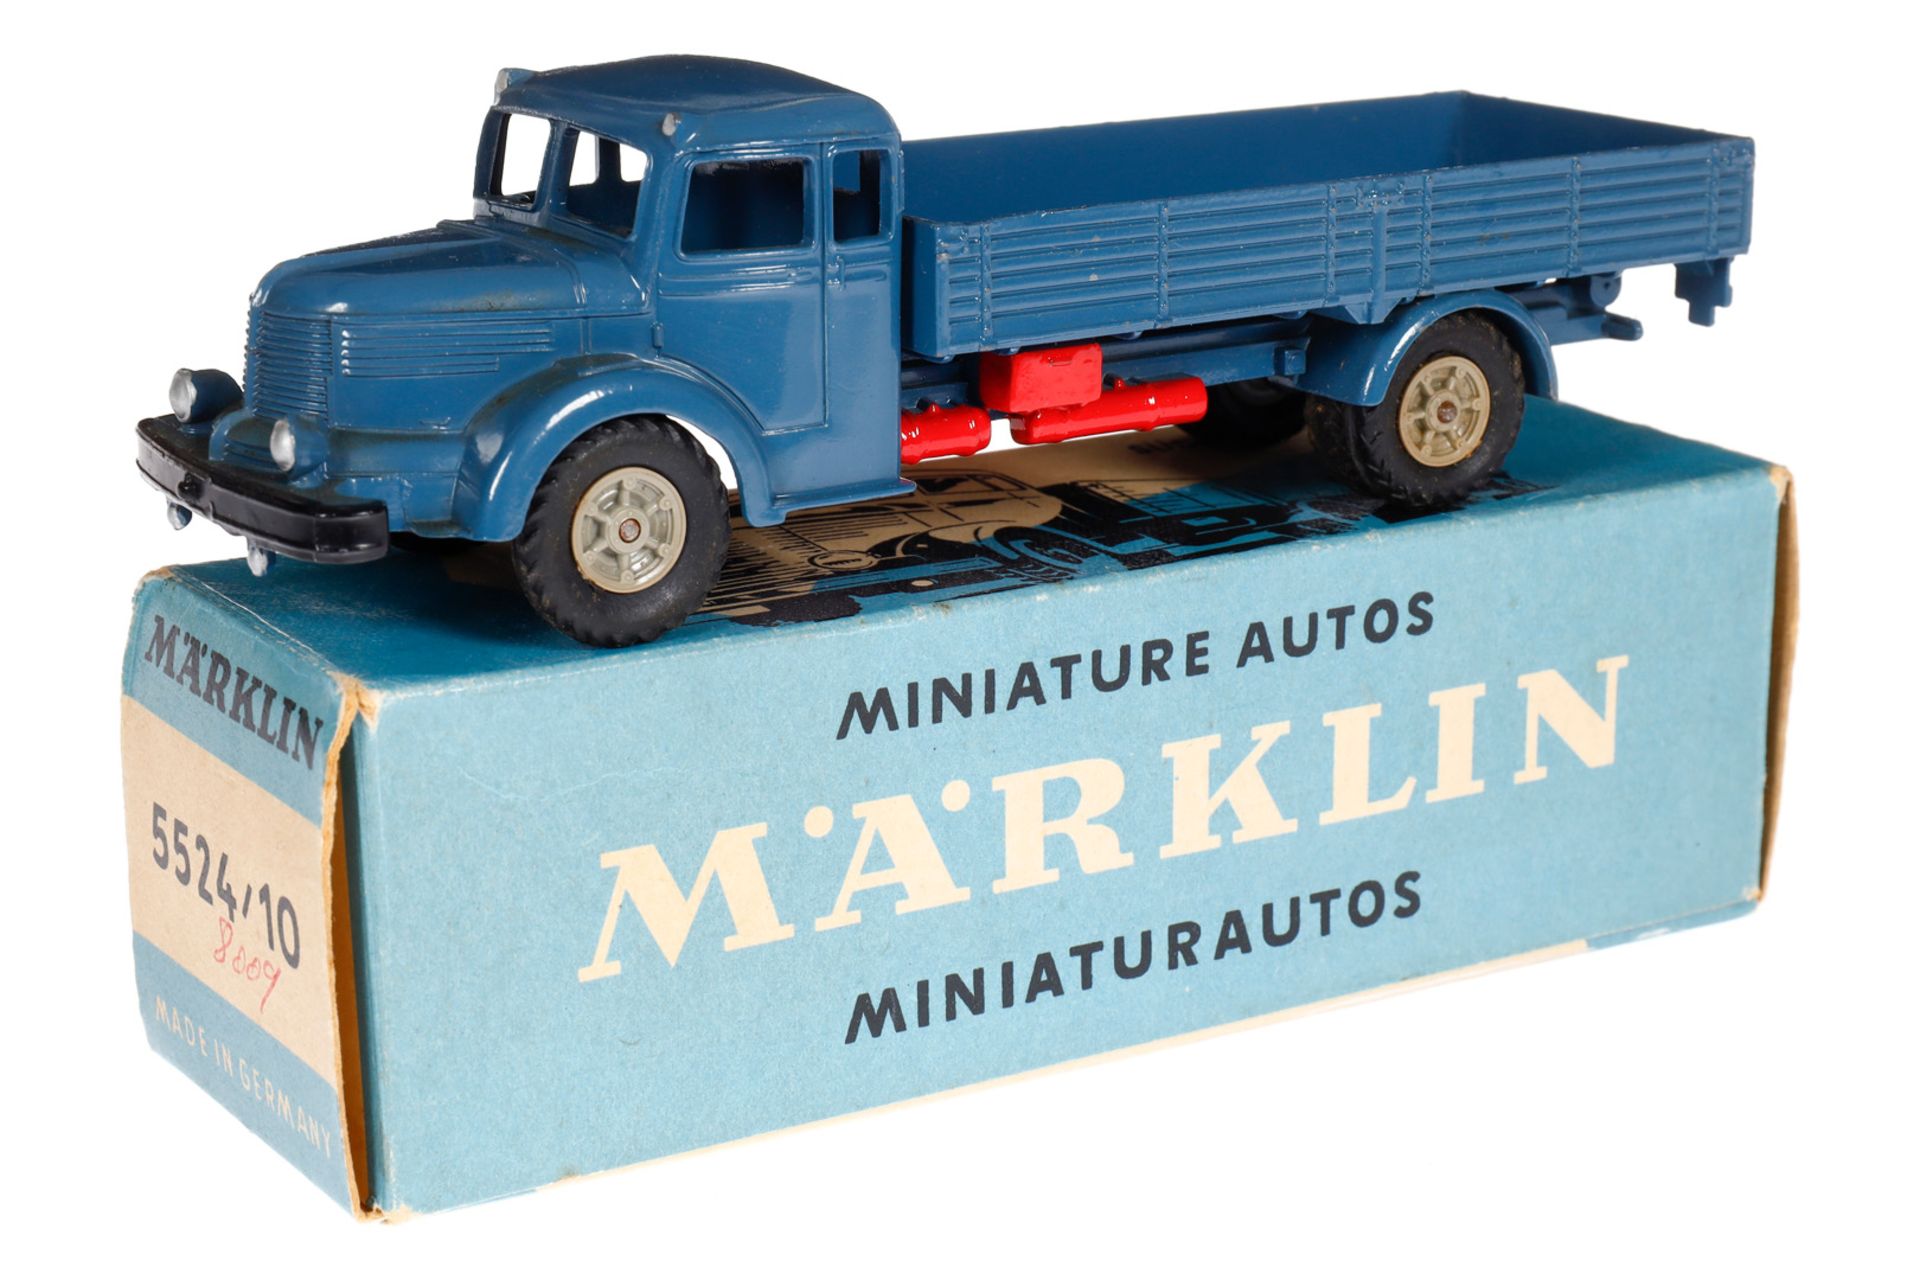 Märklin Südwerke-Lastwagen 8009-5524/10, blau/rot/schwarz, LS und Alterungsspuren, im OK, Z 1-2